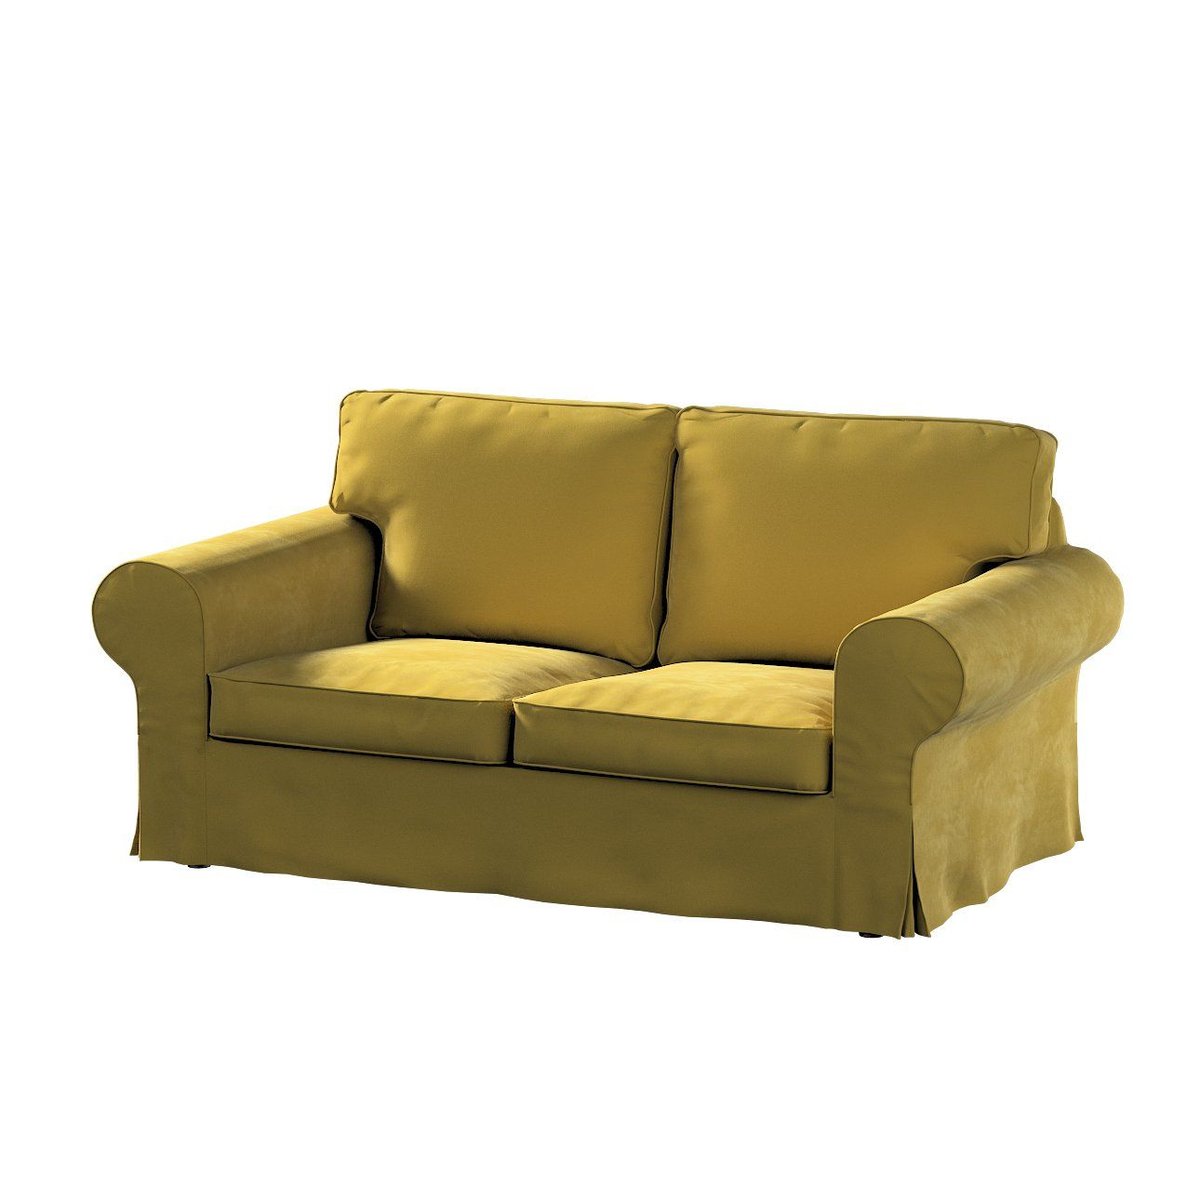 Dekoria Pokrowiec na sofę Ektorp 2-osobową rozkładaną model po 2012 oliwkowy zielony 200 x 90 x 73 cm Velvet 1016-704-27